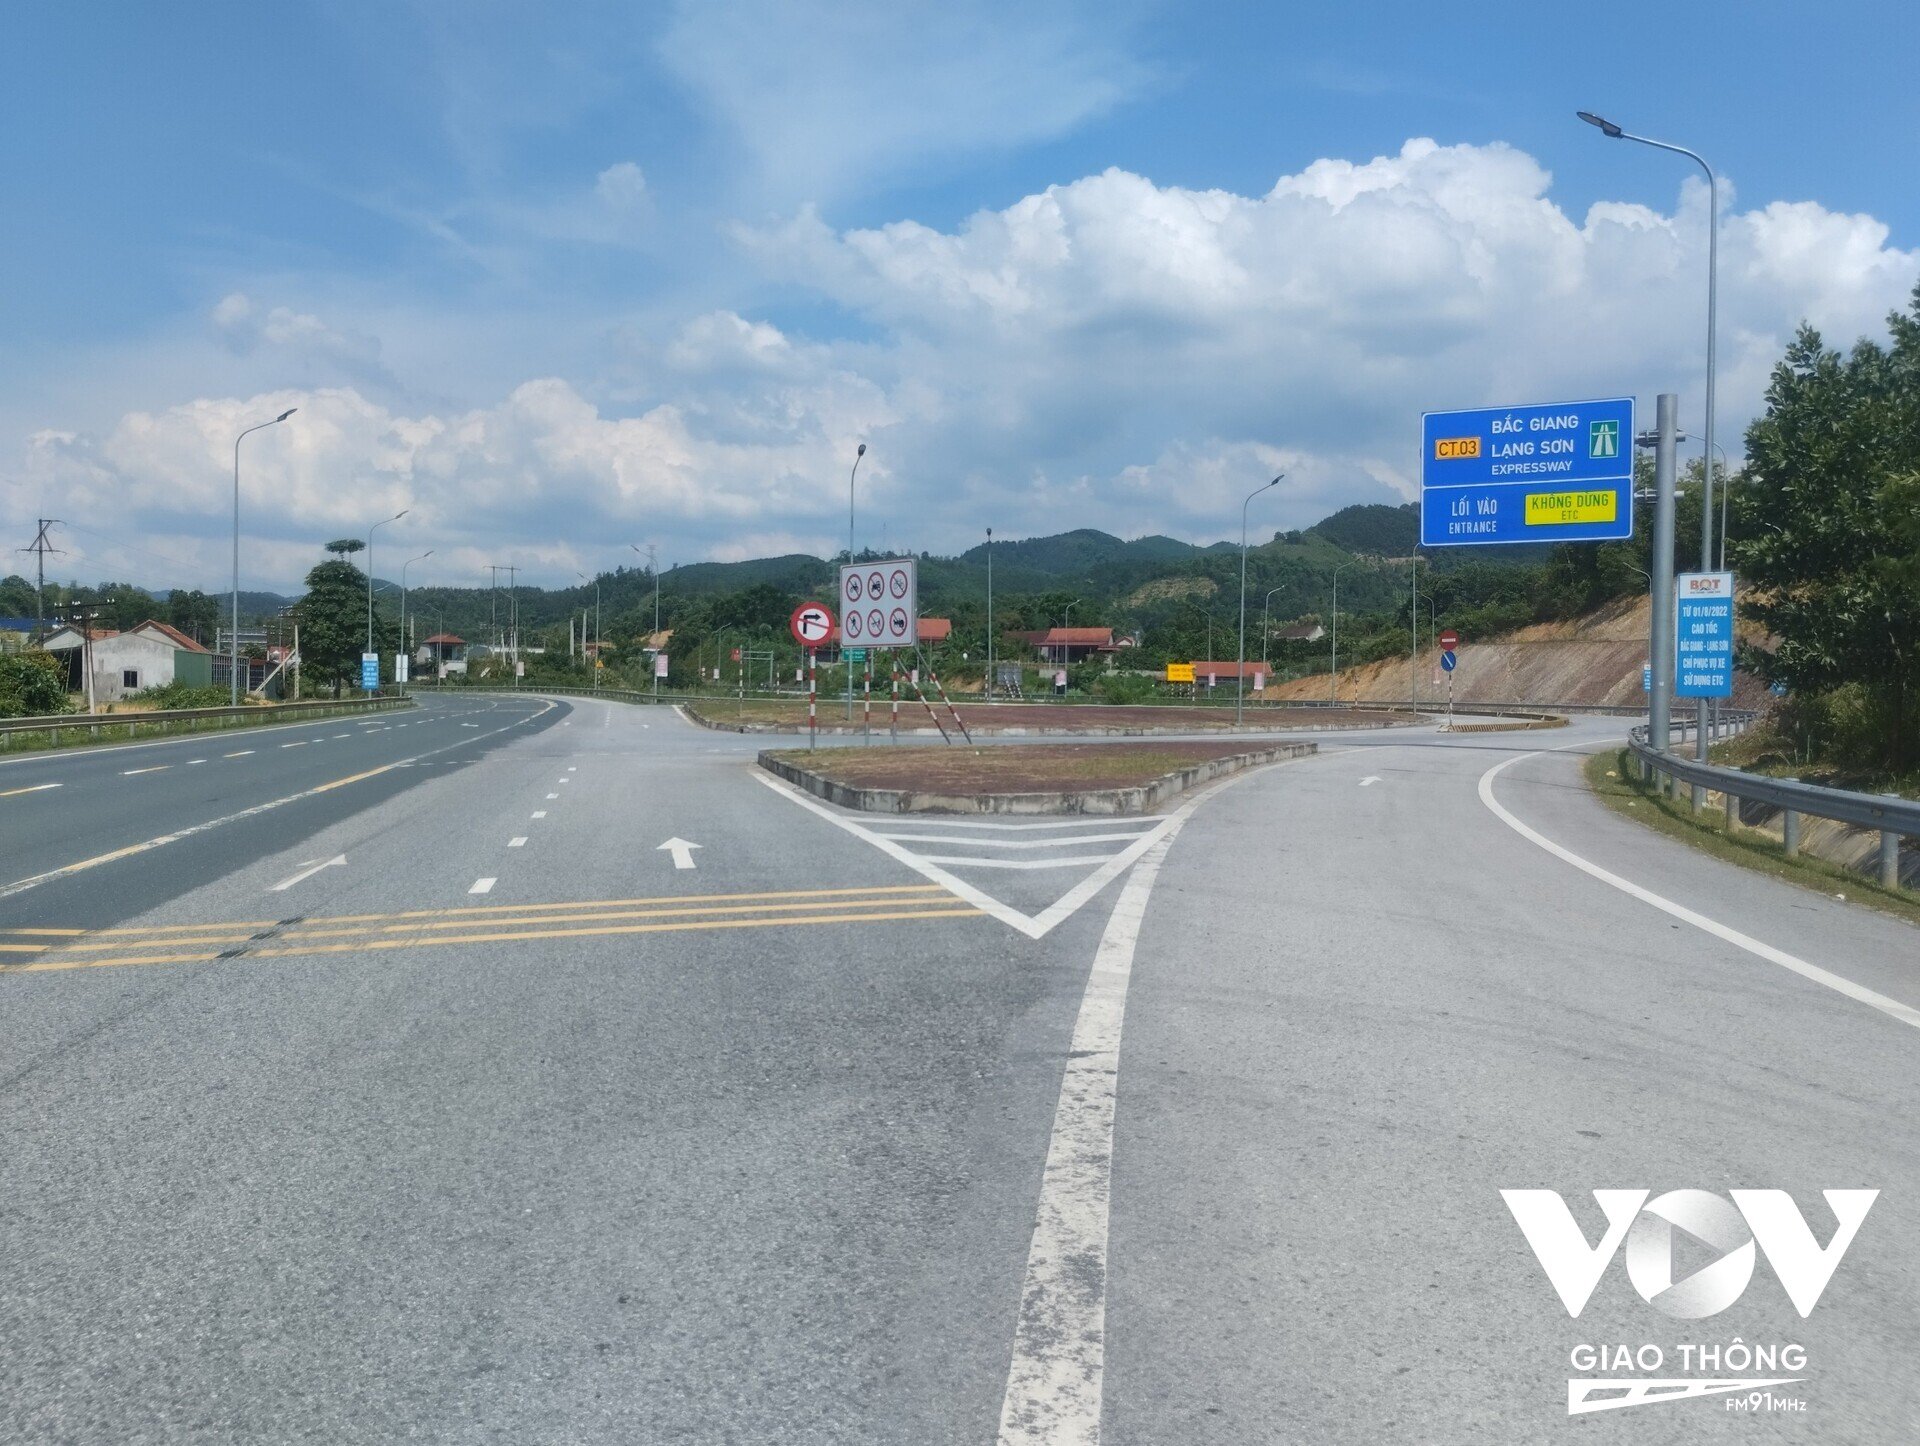 Nút giao đường dẫn ra, vào cao tốc Bắc Giang - Lạng Sơn với QL1 (đoạn Km45+100 cao ) tổ chức giao thông như hiện tại chưa thuận tiện cho người tham gia giao thông